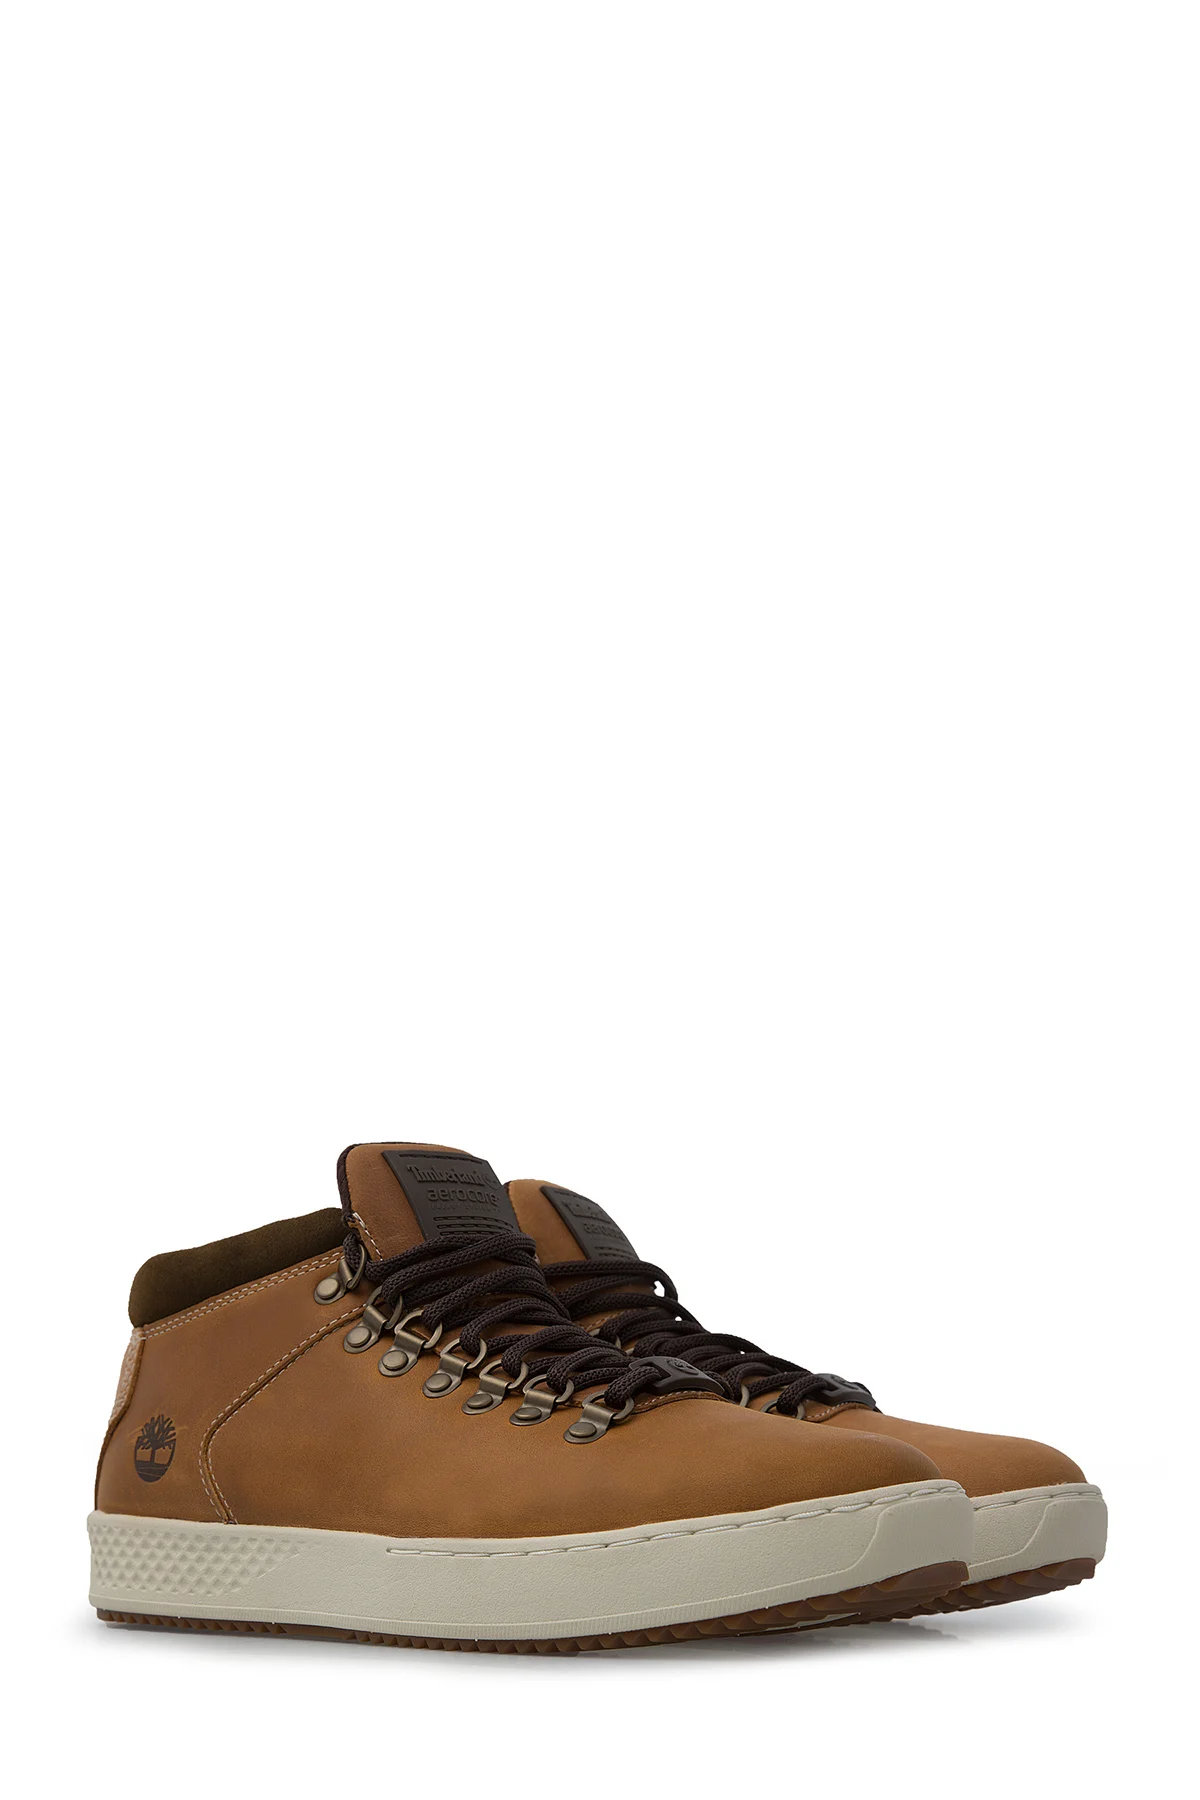 Timberland CityRoam обувь мужская обувь TB0A1S6B 2311 | Обувь | АлиЭкспресс